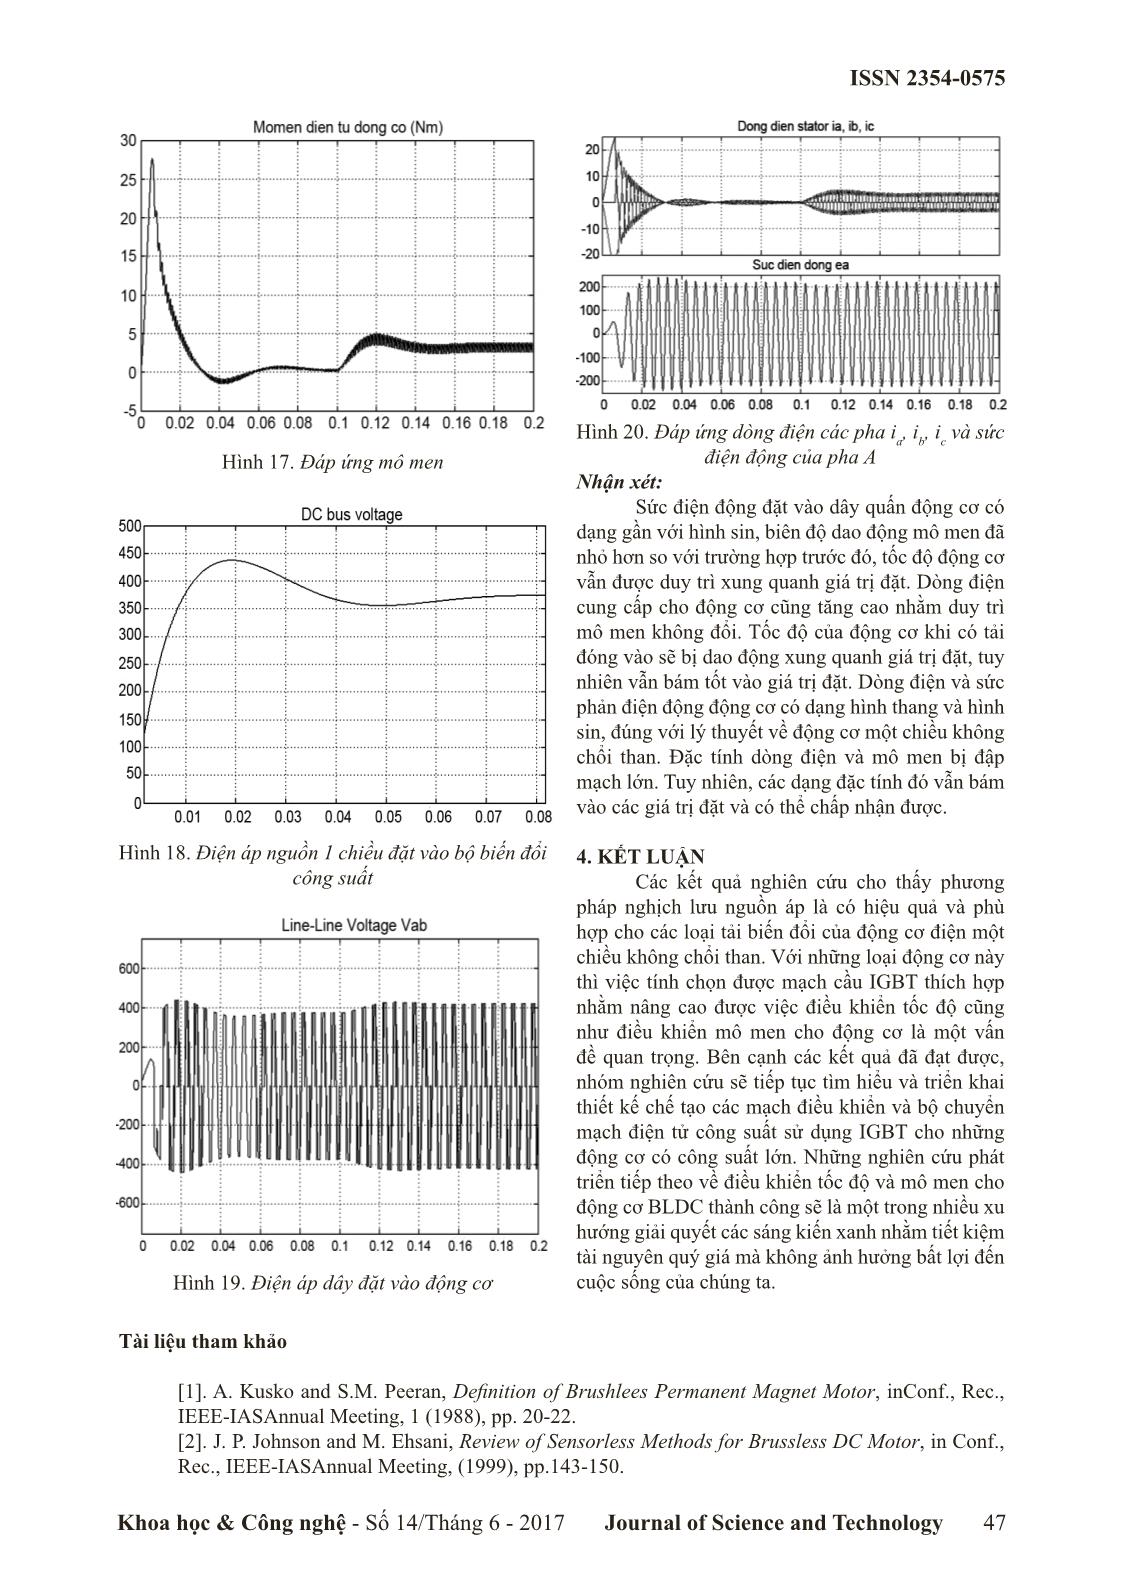 Nghiên cứu ổn định tốc độ và giảm dao động mô men cho động cơ BLDC bằng phương pháp nghịch lưu nguồn áp trang 6